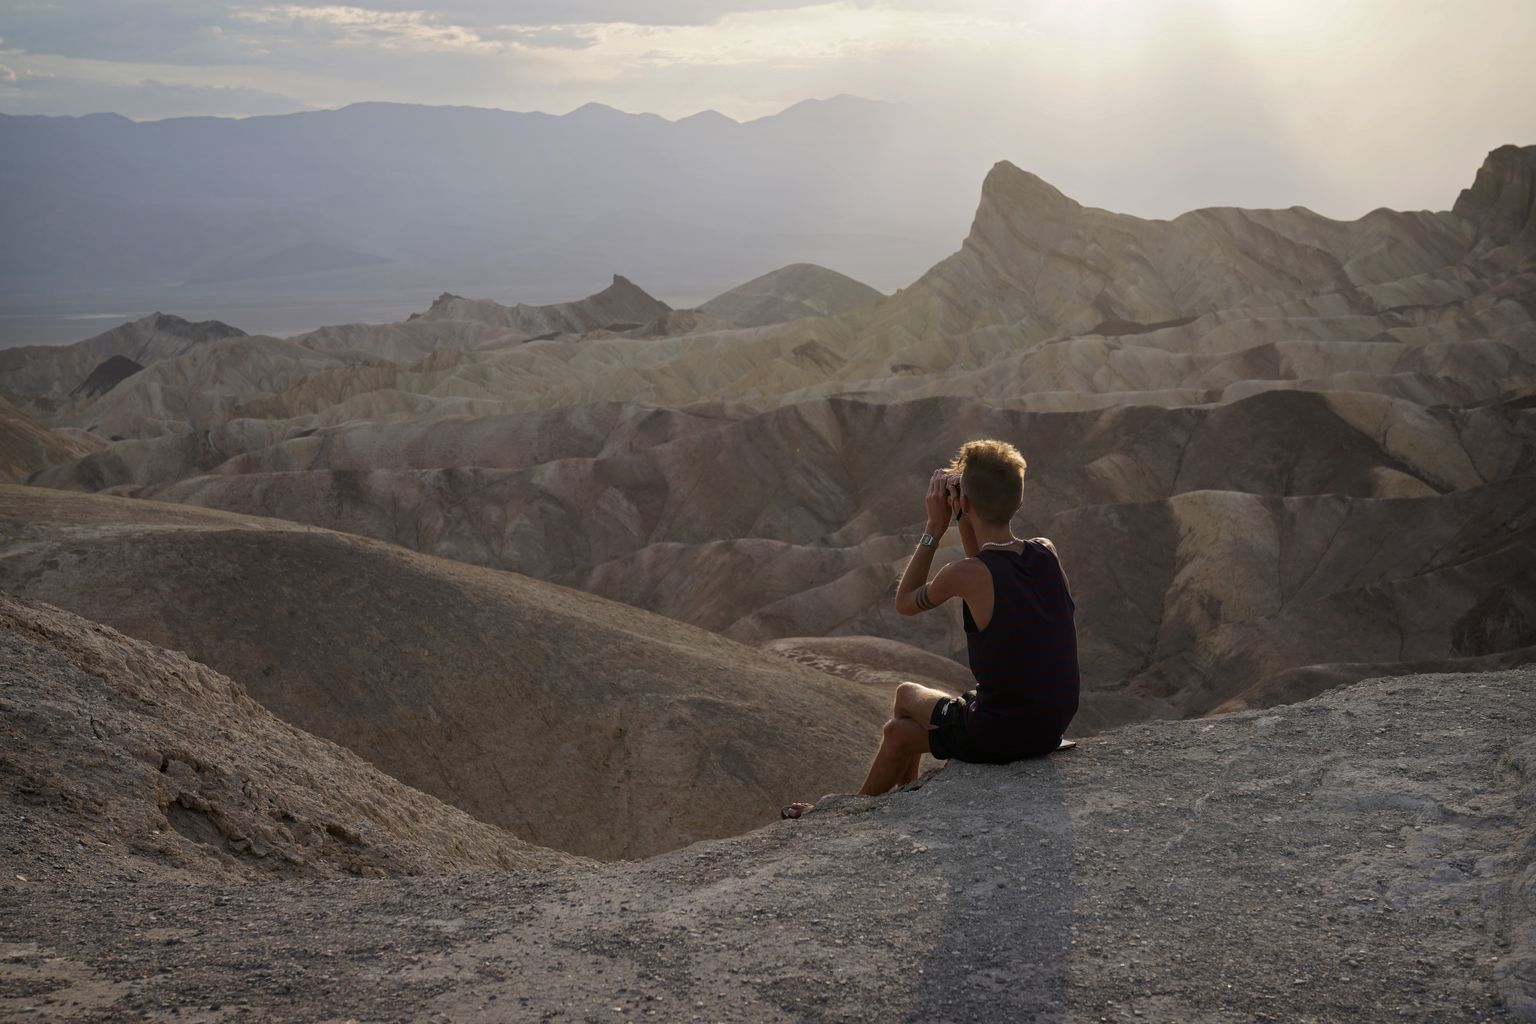 Matkaja pildistamas USA California Surmaorus maastikkku, temperatuur tõusis 11. juulil seal +54,4 kraadini